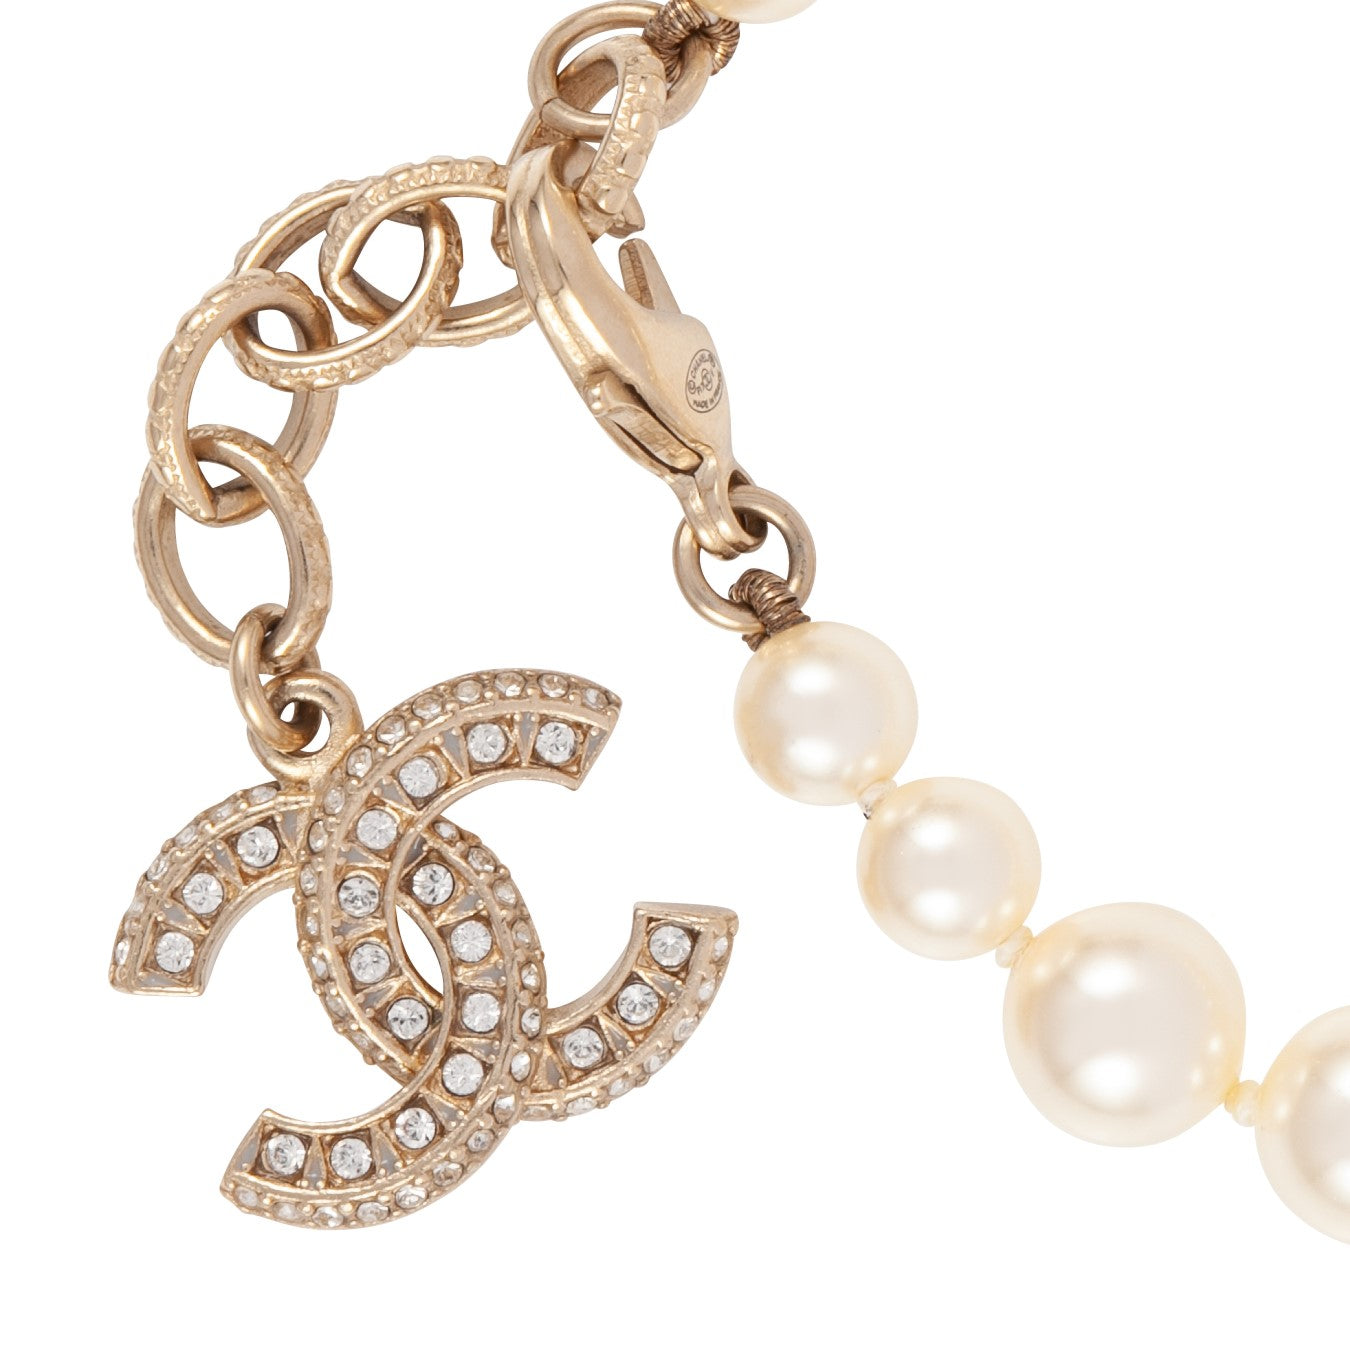 2017 Chanel Faux Pearl Bracelet